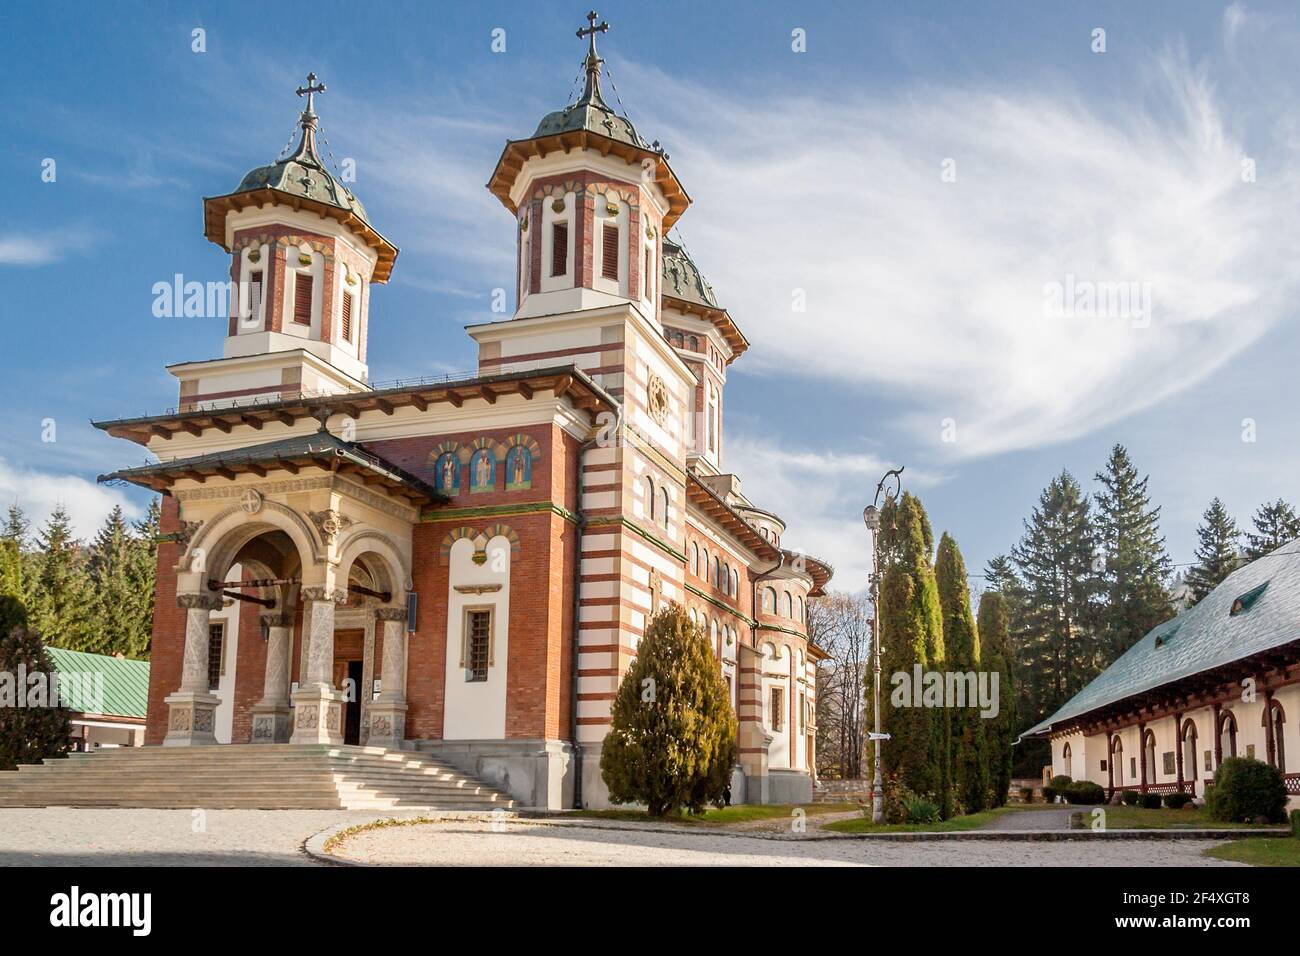 Monastère orthodoxe de Sinaia, dans la vallée de Prahova, dans les montagnes des Carpates, dans le quartier de Prahova, en Roumanie. Banque D'Images